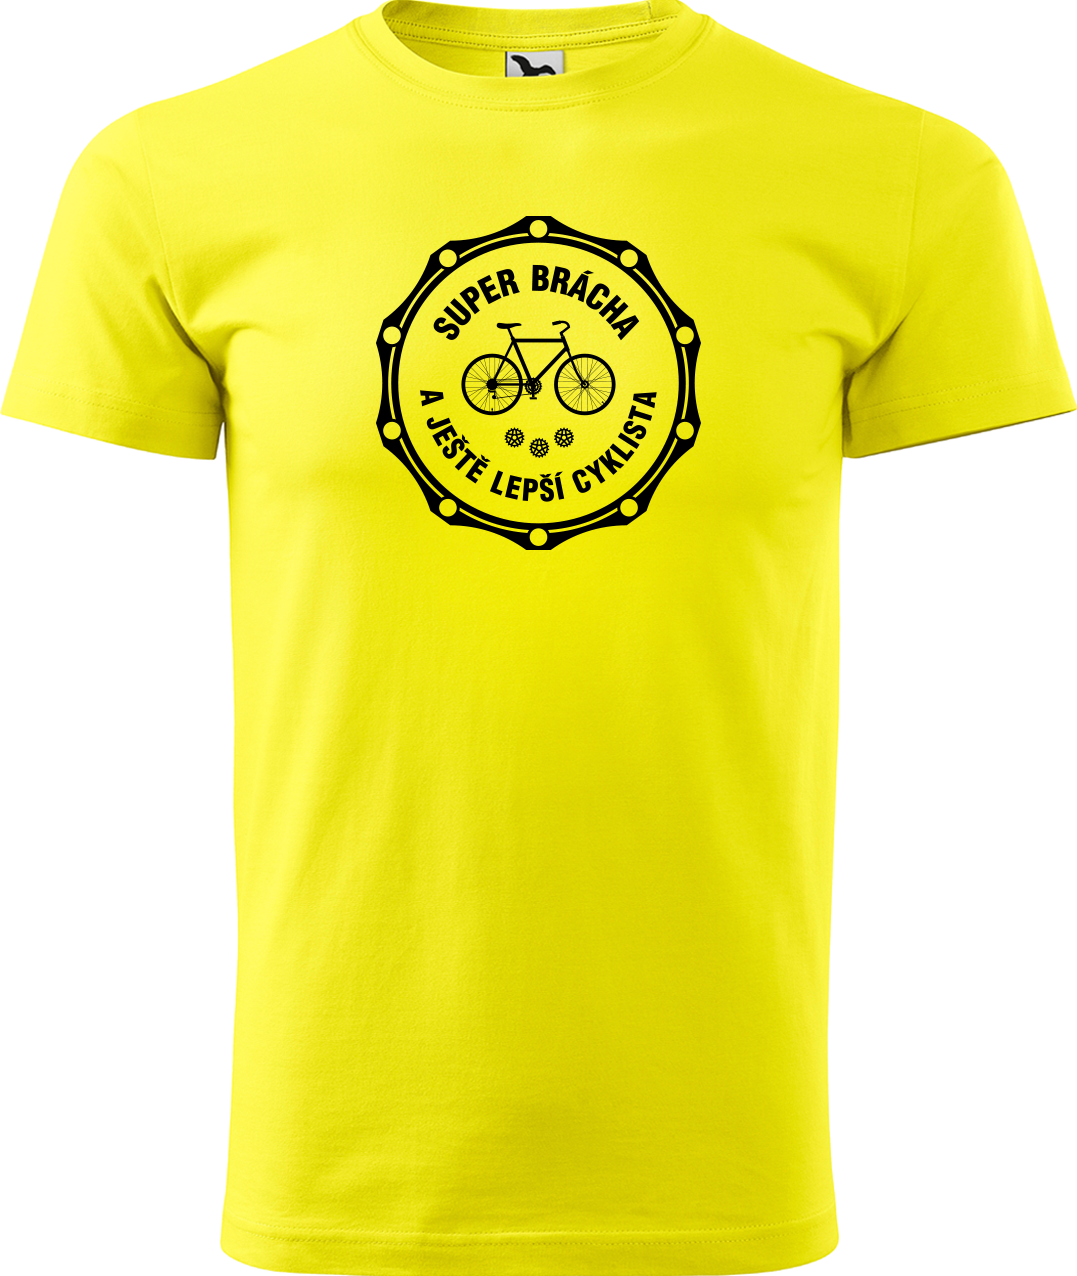 Pánské tričko pro cyklistu - Super brácha a ještě lepší cyklista Velikost: S, Barva: Žlutá (04)